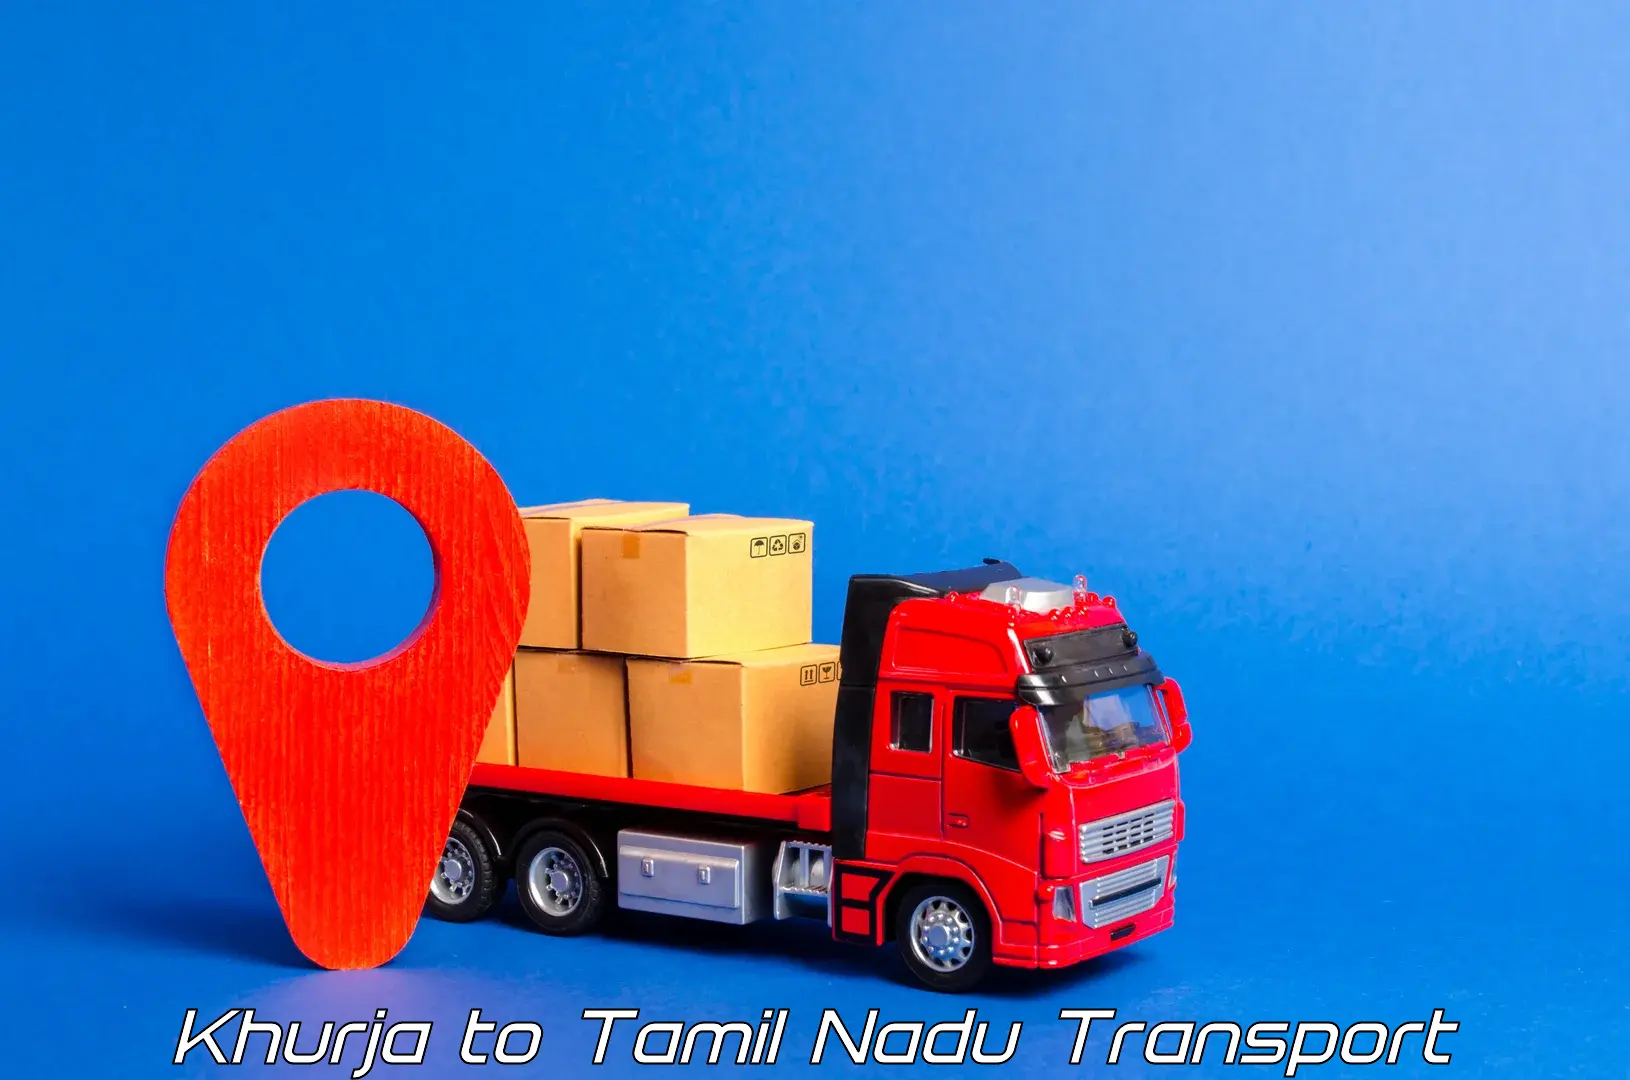 Commercial transport service Khurja to Thoppur